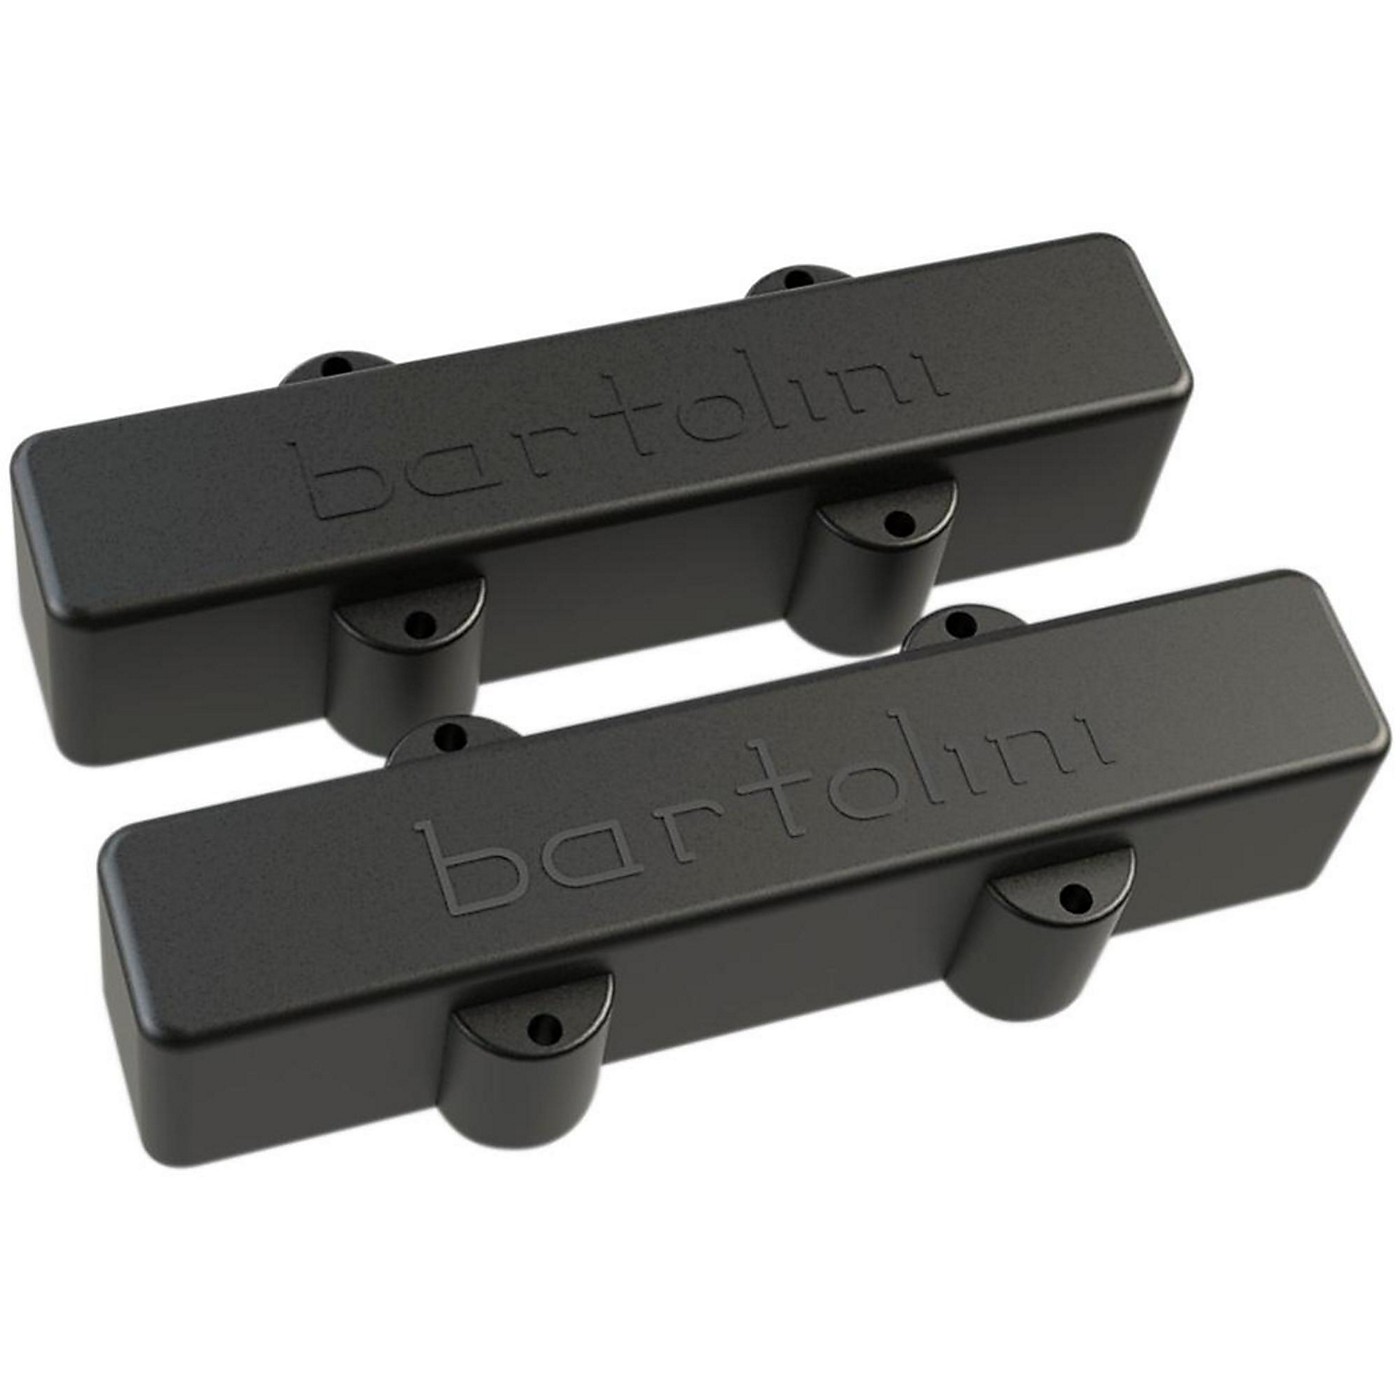 Bartolini 9J1-L/S J Bass, 4-String, Original, Dual In-Line Coil, Neck & Bridge Set thumbnail